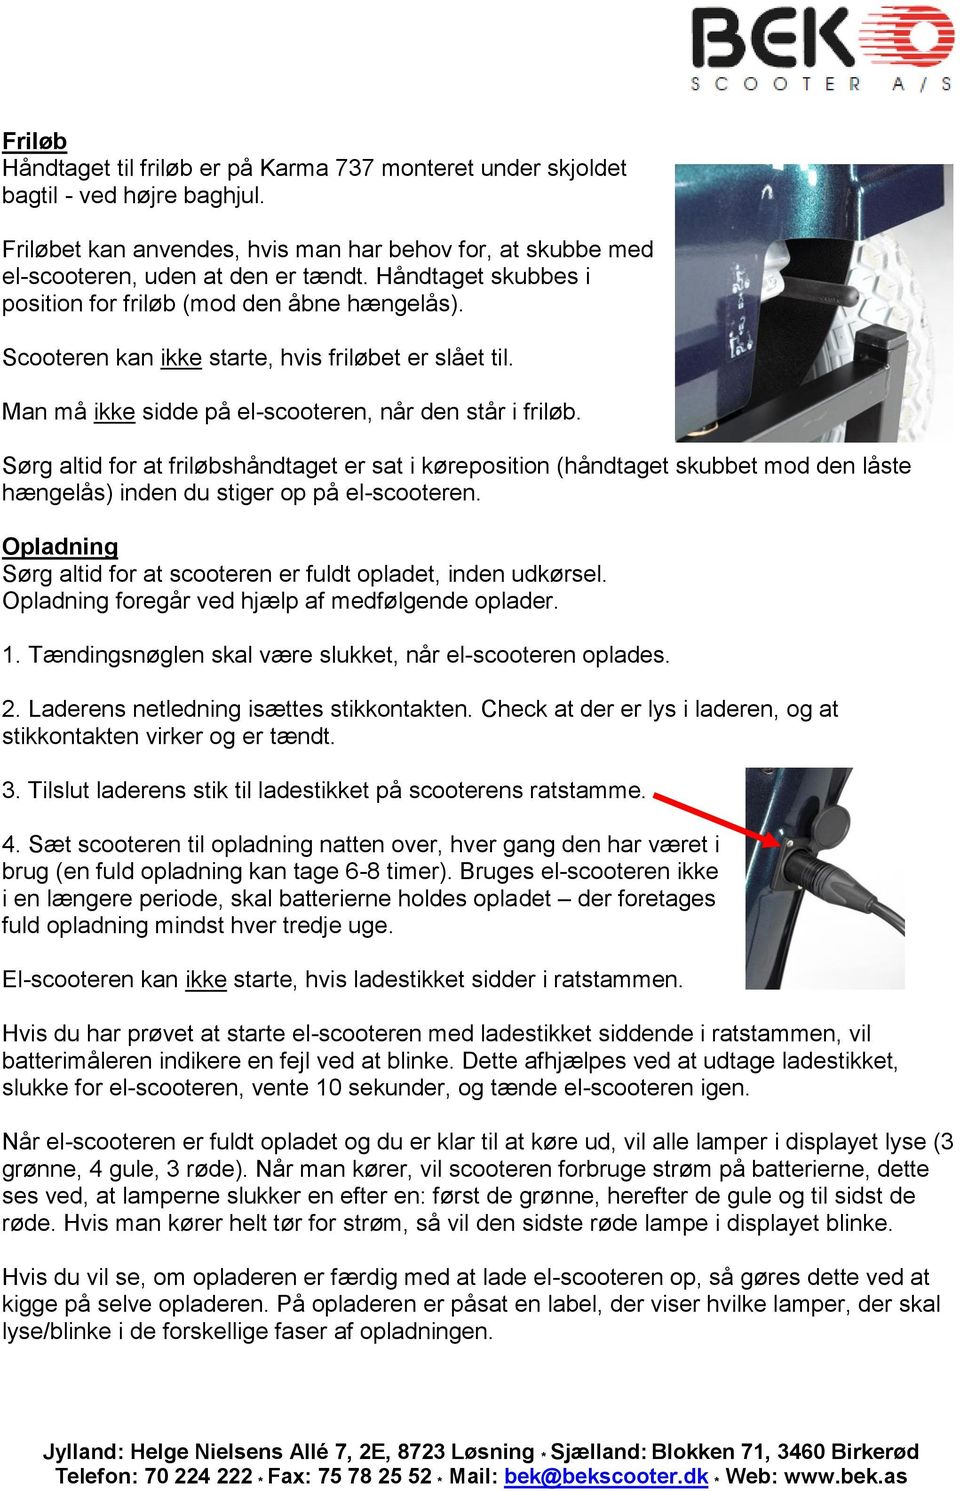 Karma 737 el-scooter. Den perfekte allround-model til både land og by.  Tekniske specifikationer: - PDF Gratis download